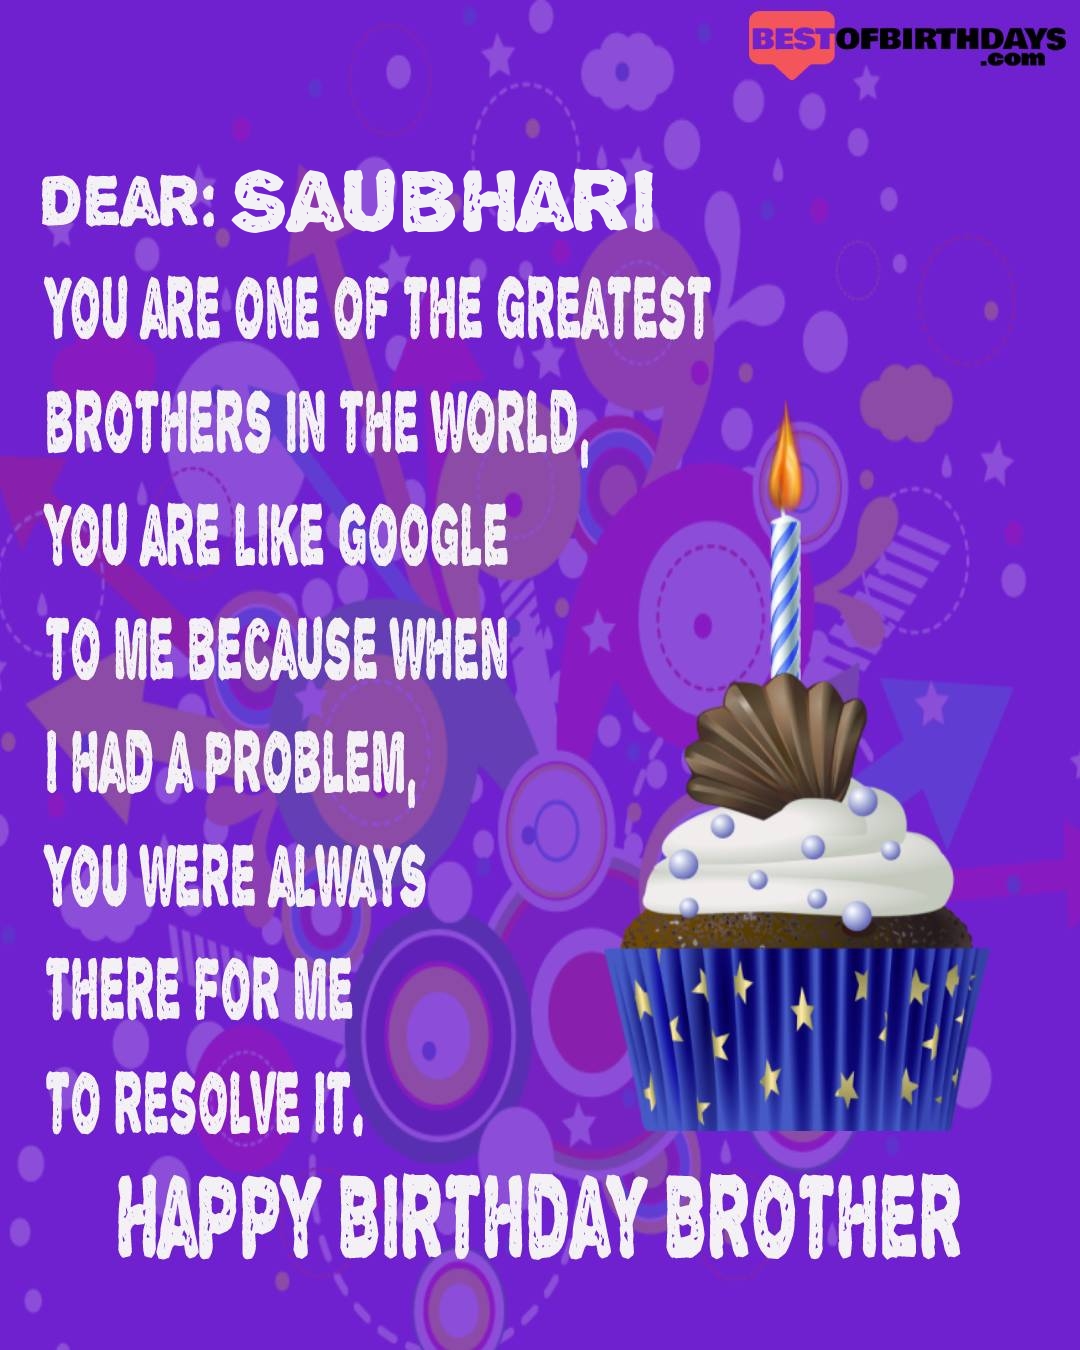 Happy birthday saubhari bhai brother bro